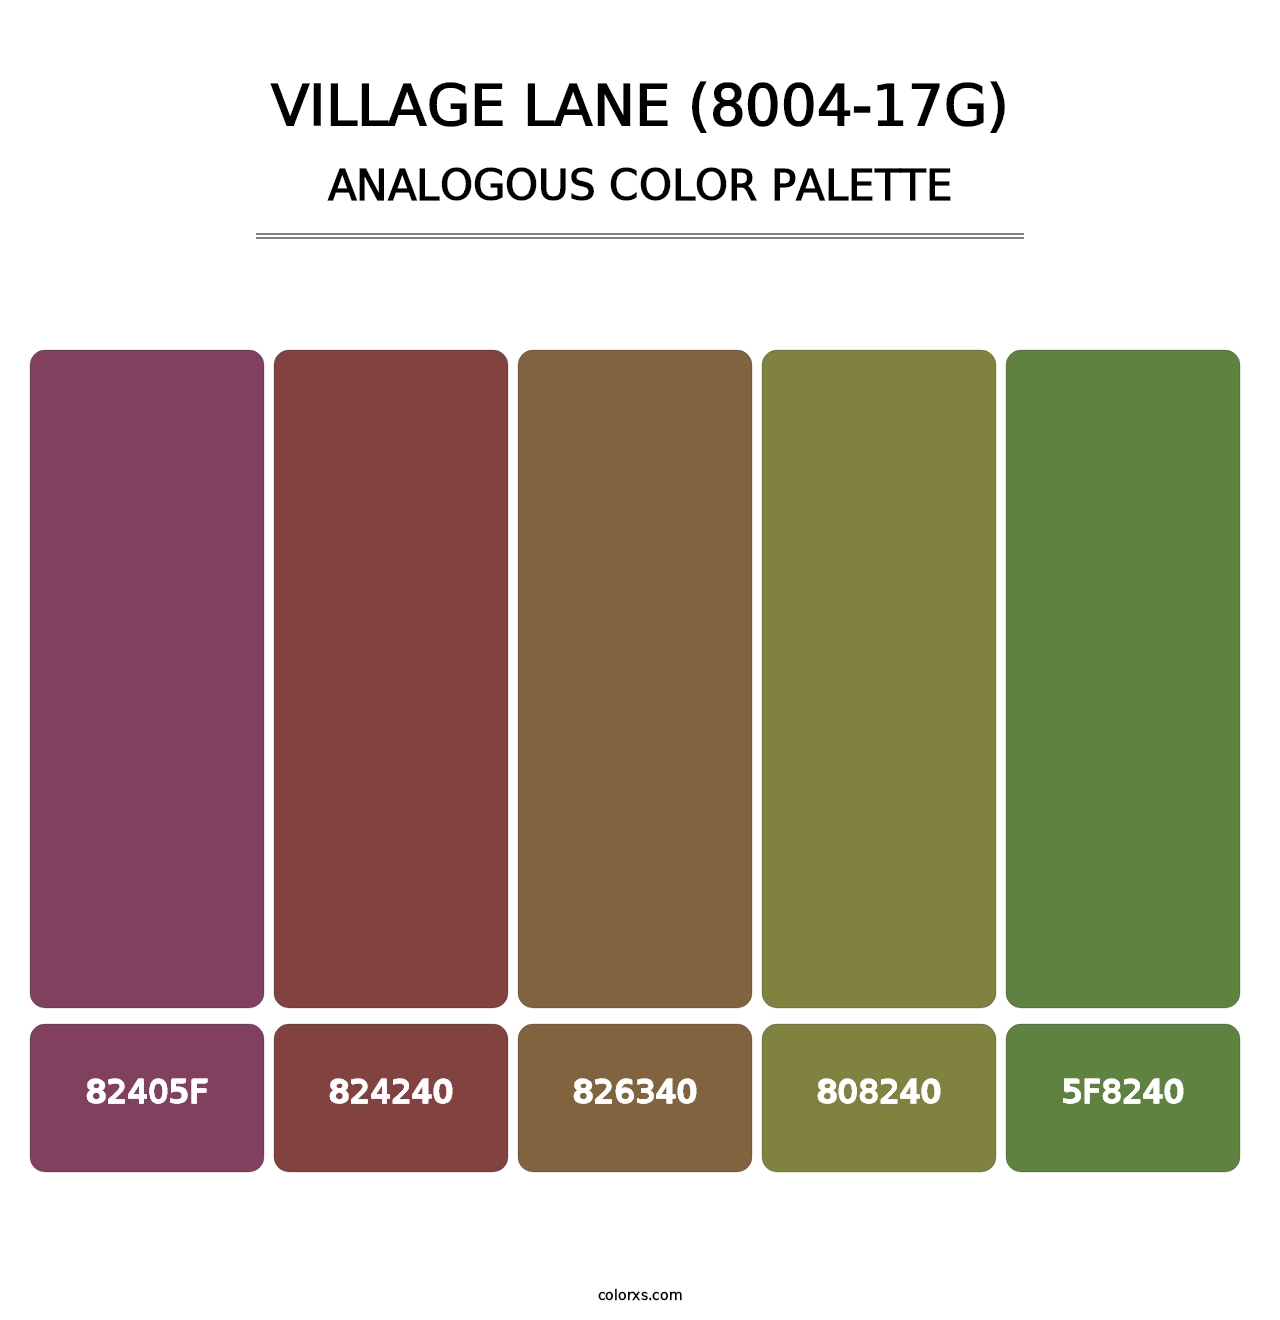 Village Lane (8004-17G) - Analogous Color Palette